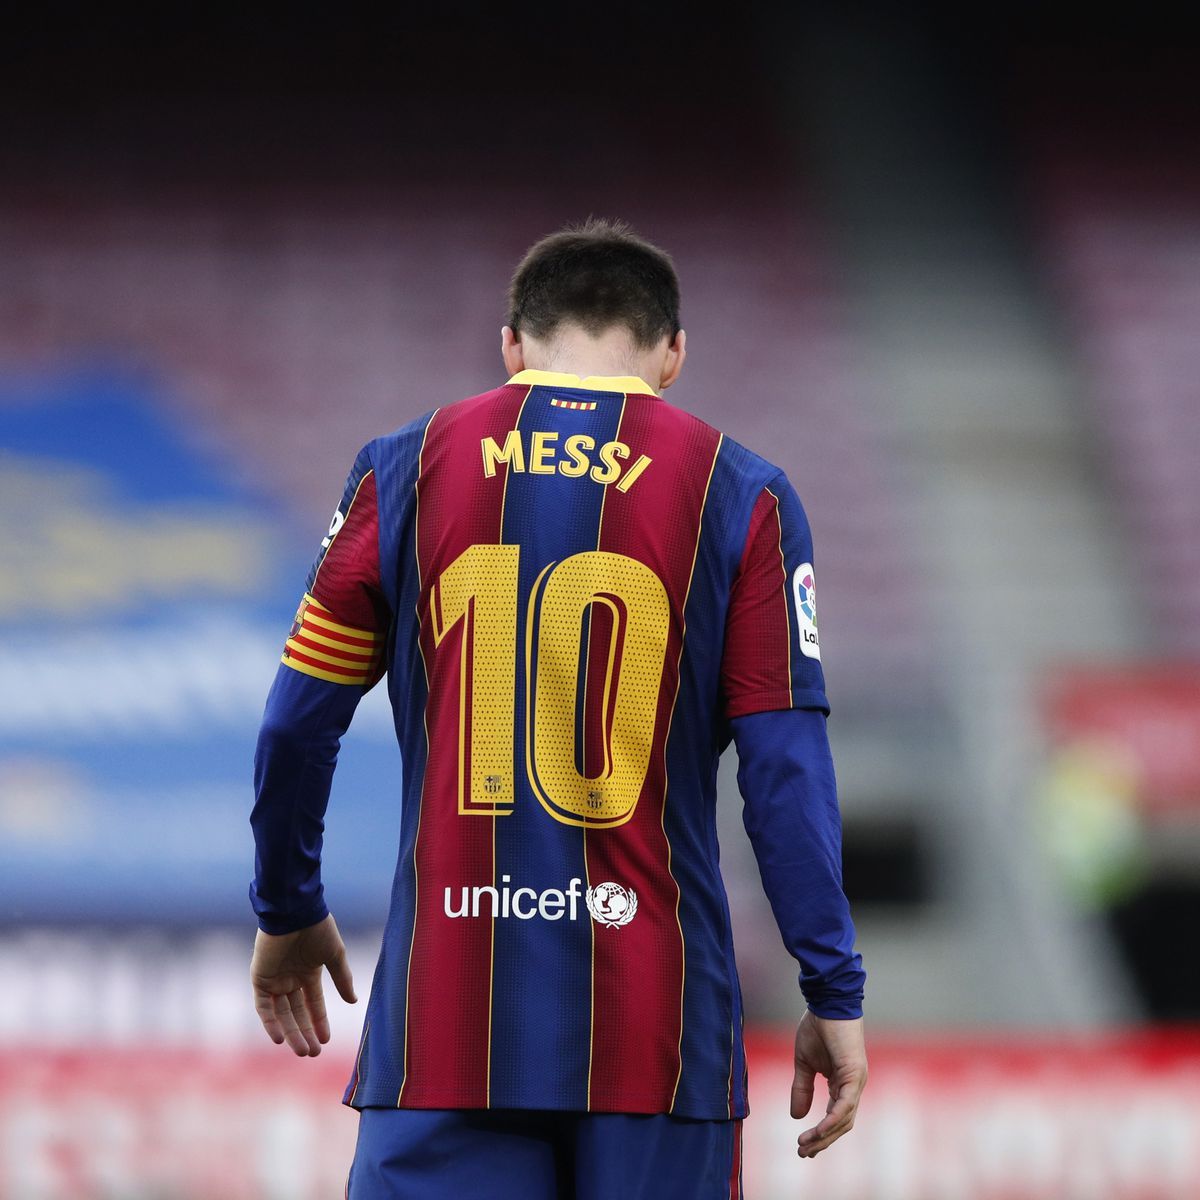 Messi hará visita sorpresa a Quito y estará en La Carolina este Miercoles 28